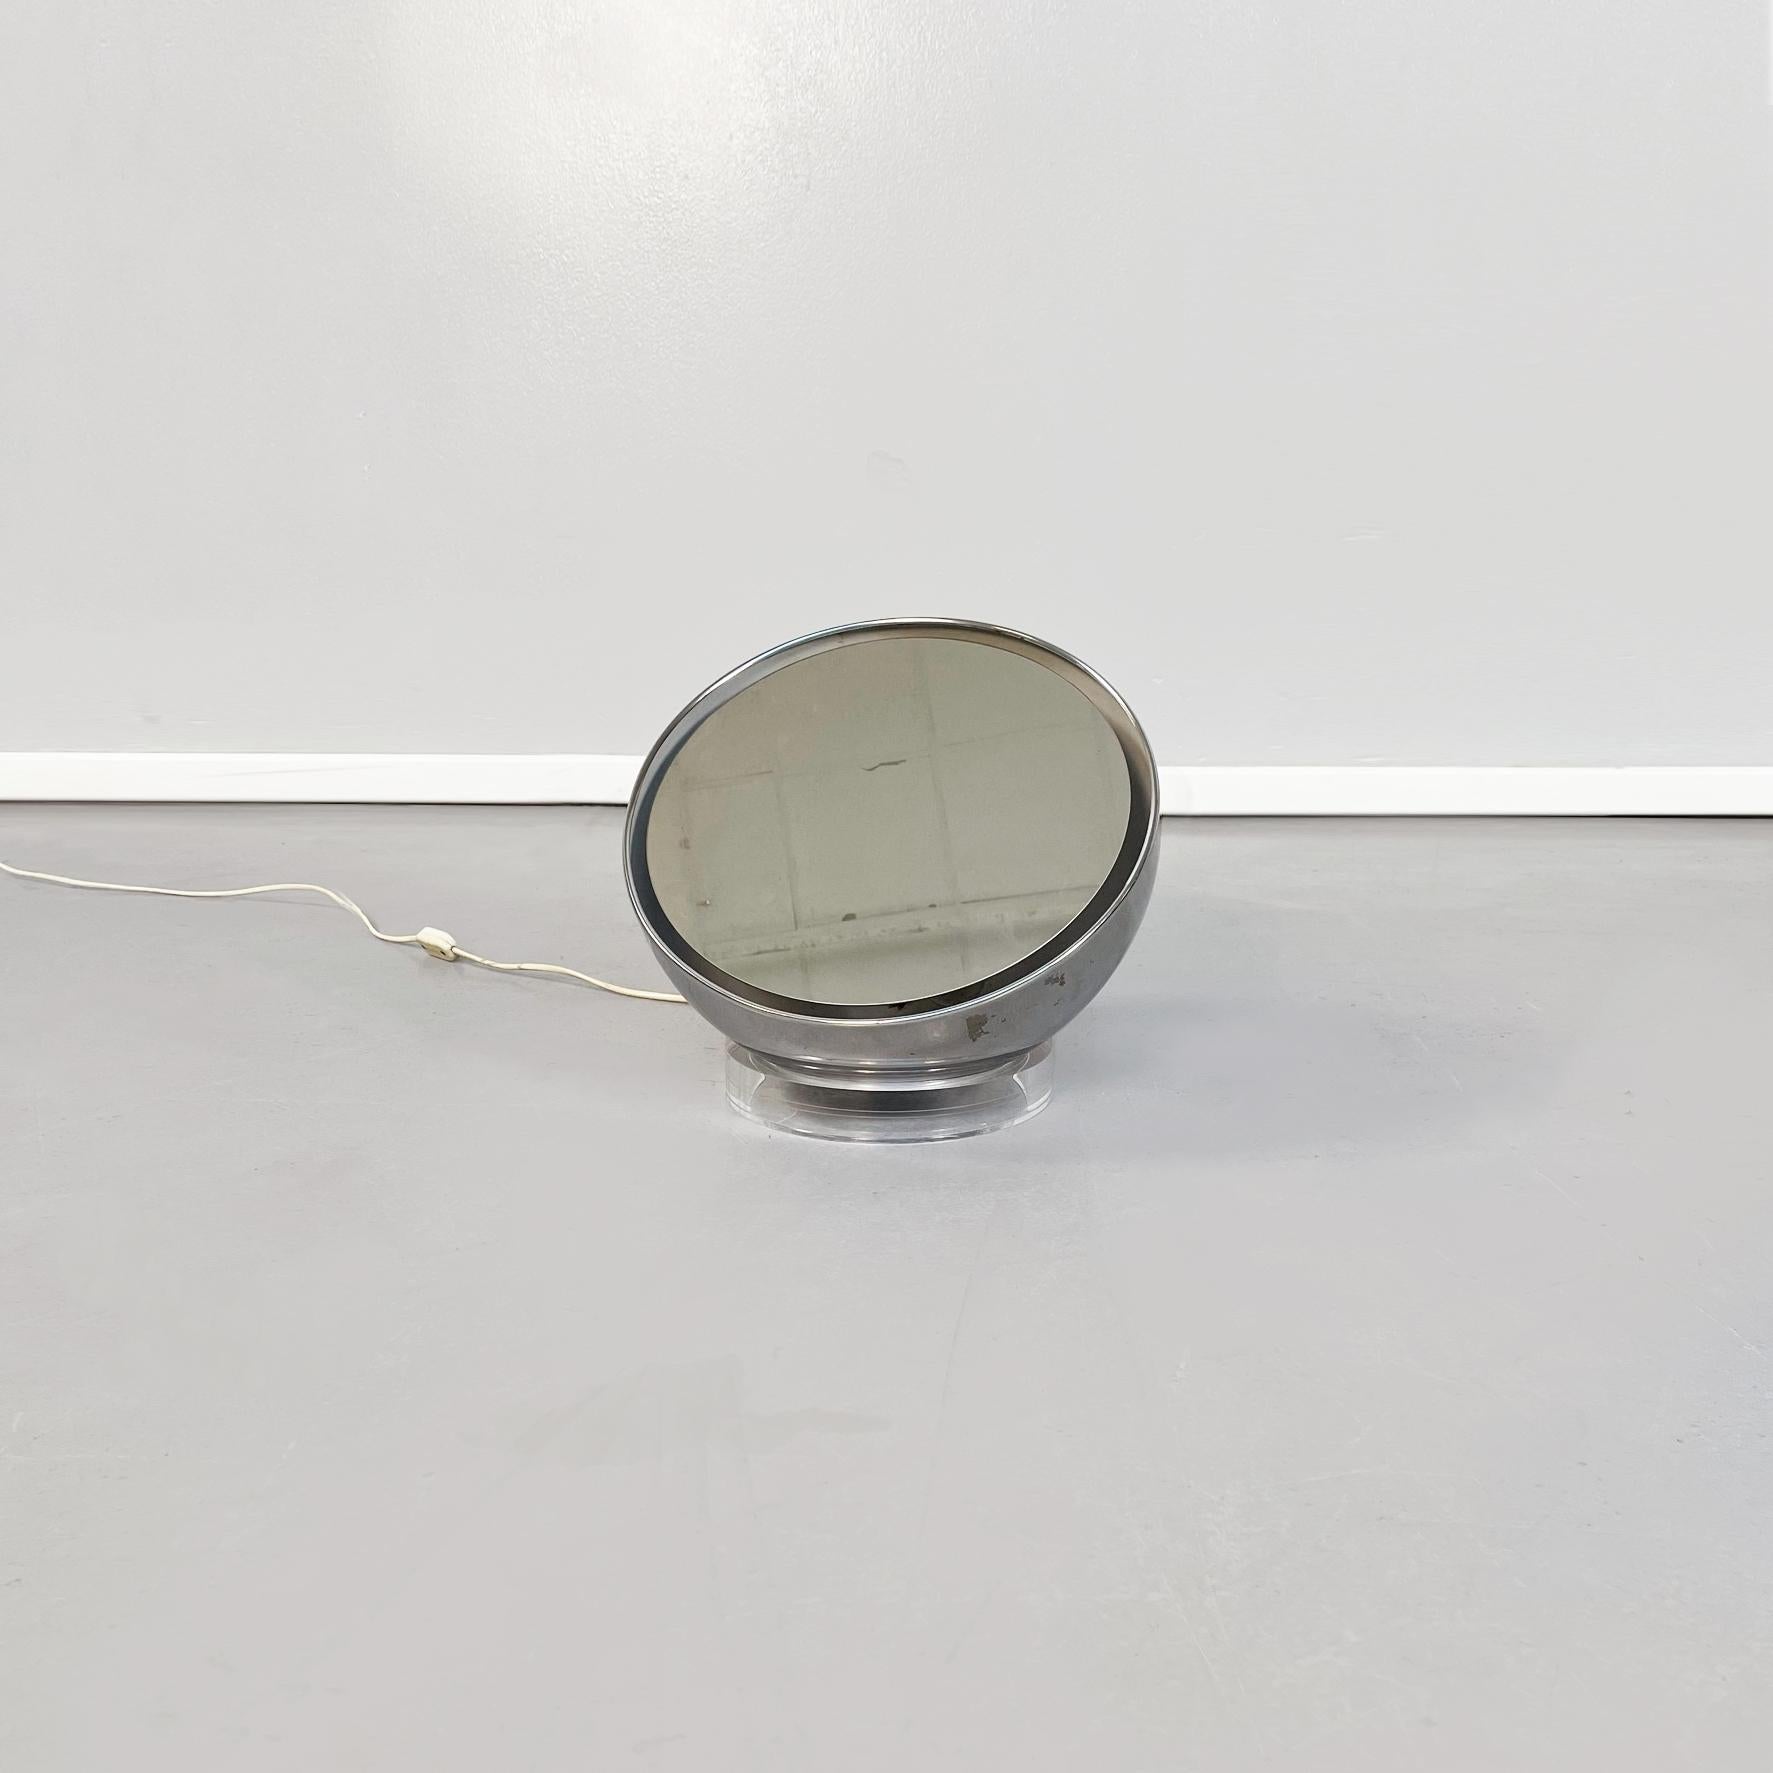 Lampe de table-miroir demi-sphérique italienne du milieu du siècle en acier et en plastique, années 1970.
Lampe de table-miroir demi-sphérique en acier avec base circulaire en plastique. Le miroir est suspendu au milieu de l'hémisphère et est